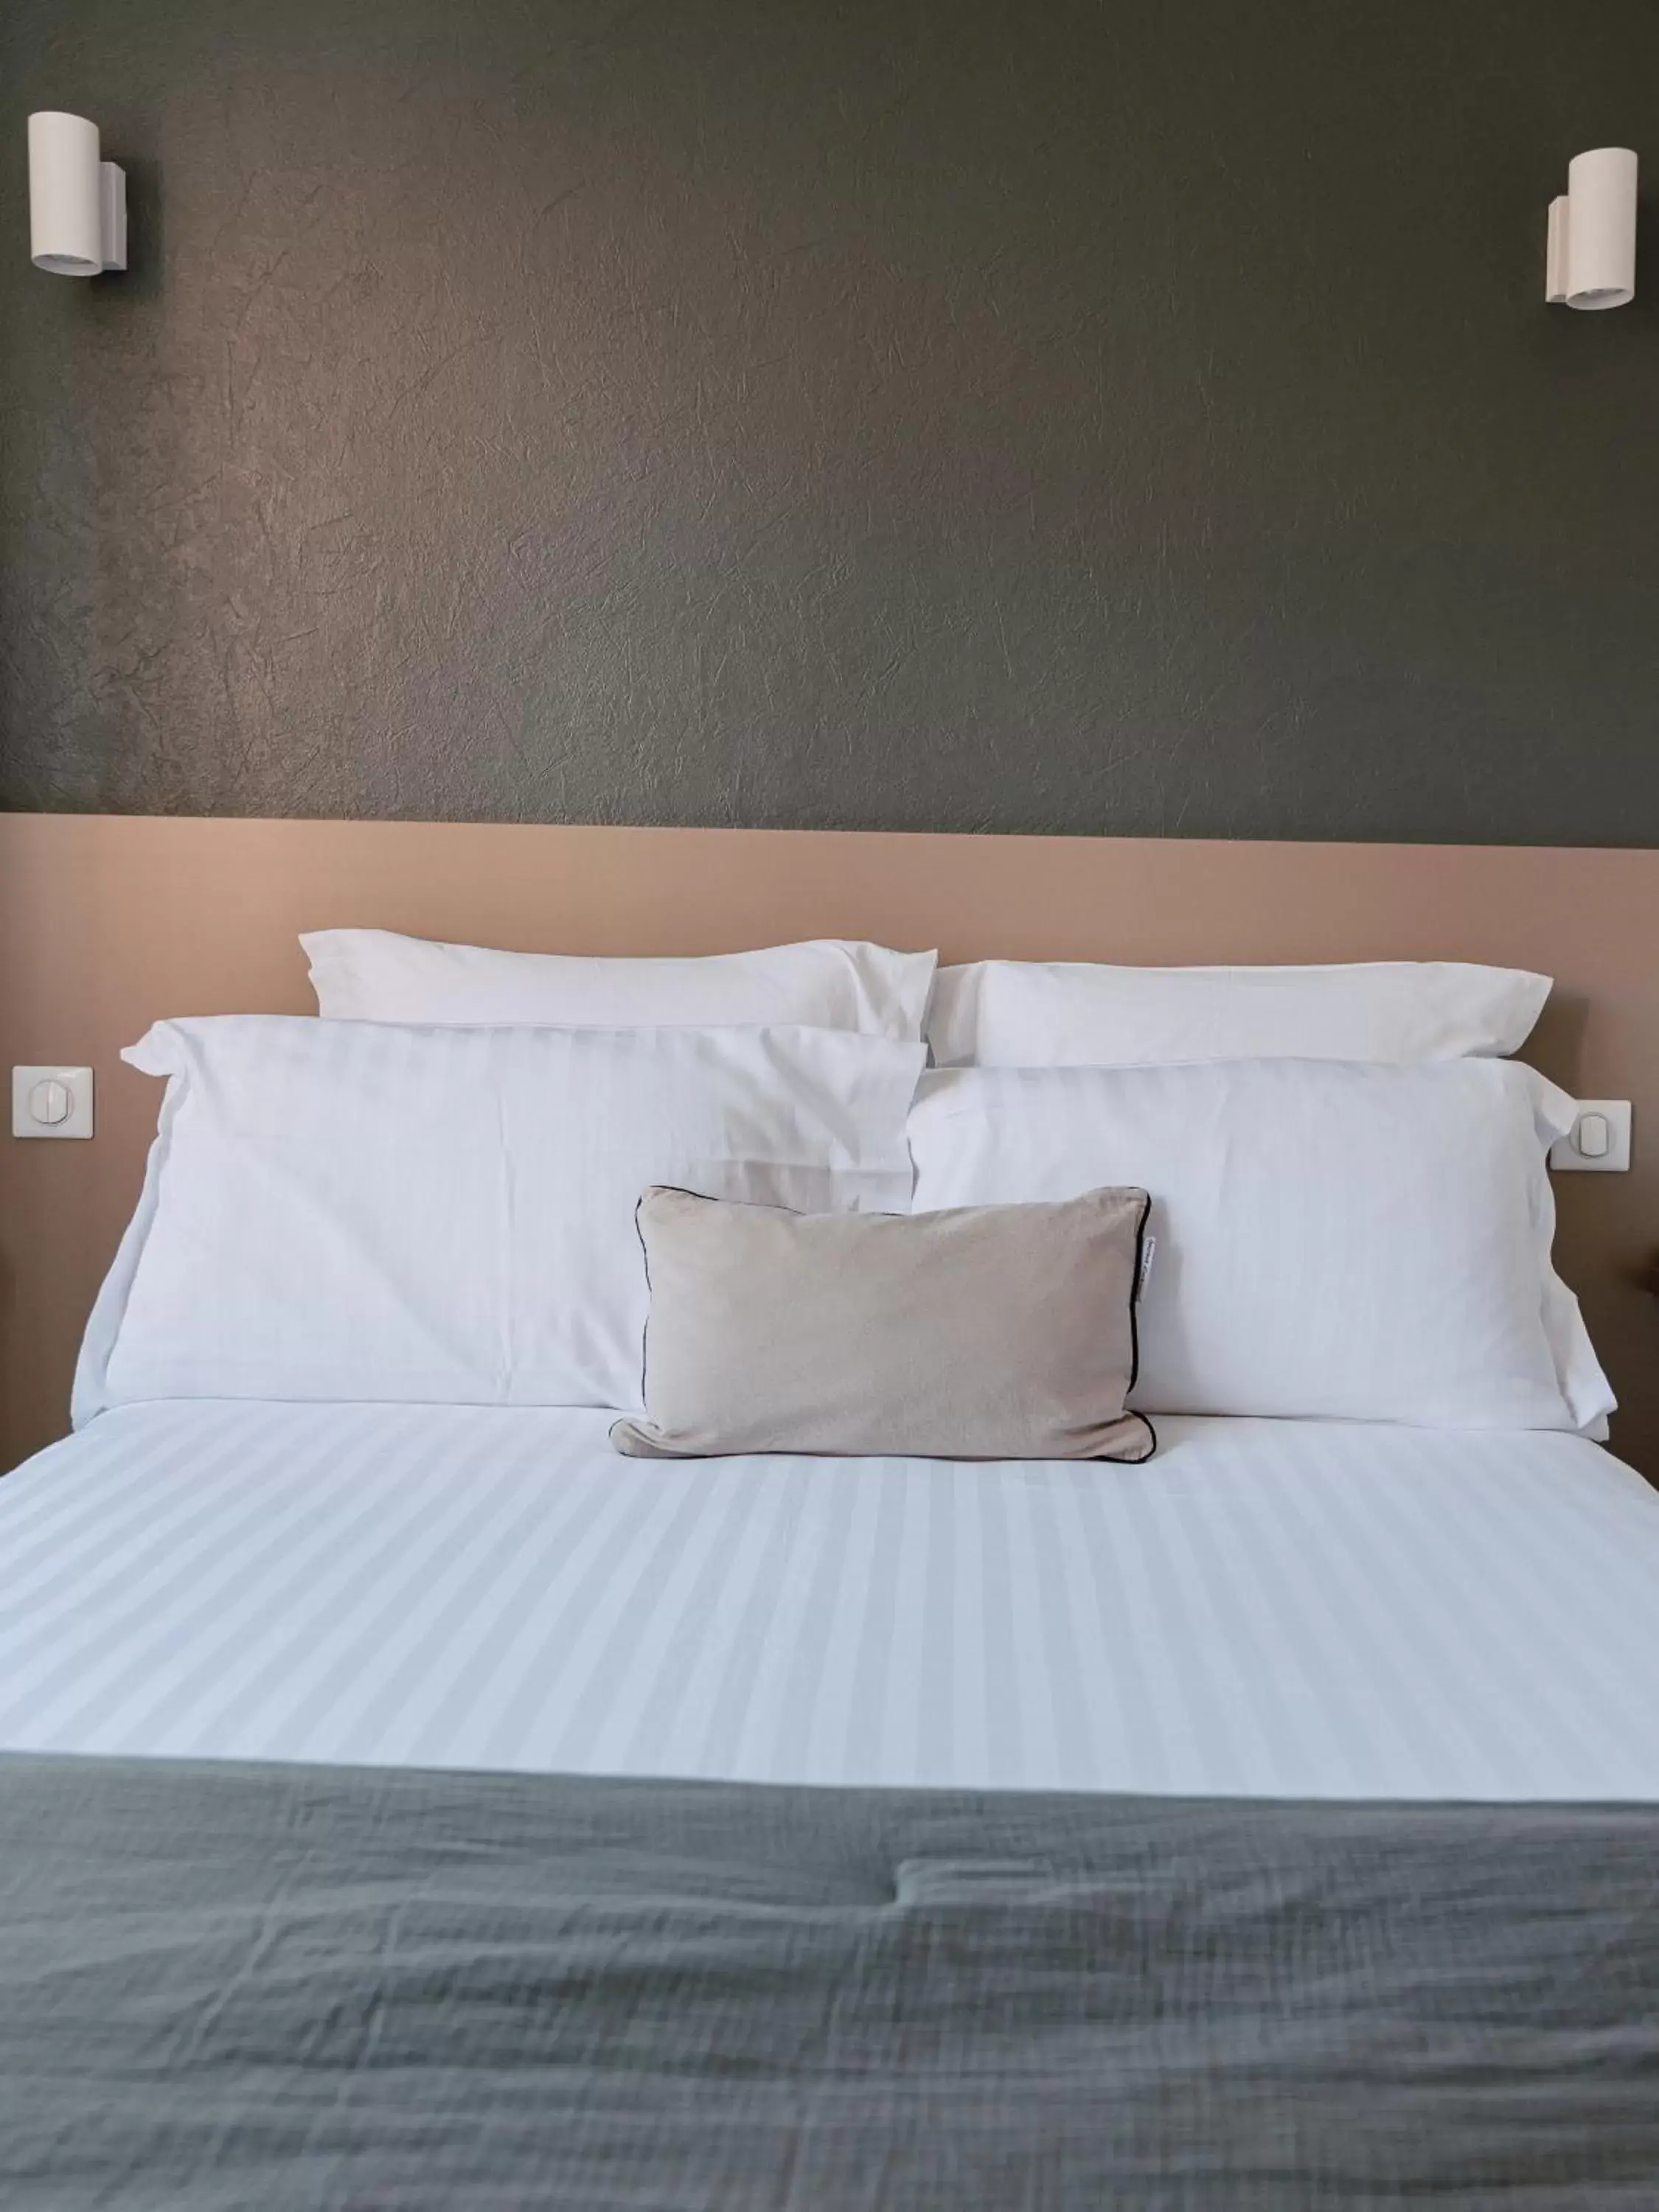 Bed in Mage hôtels - Hôtel la grenette - Brasserie Bonté Divine